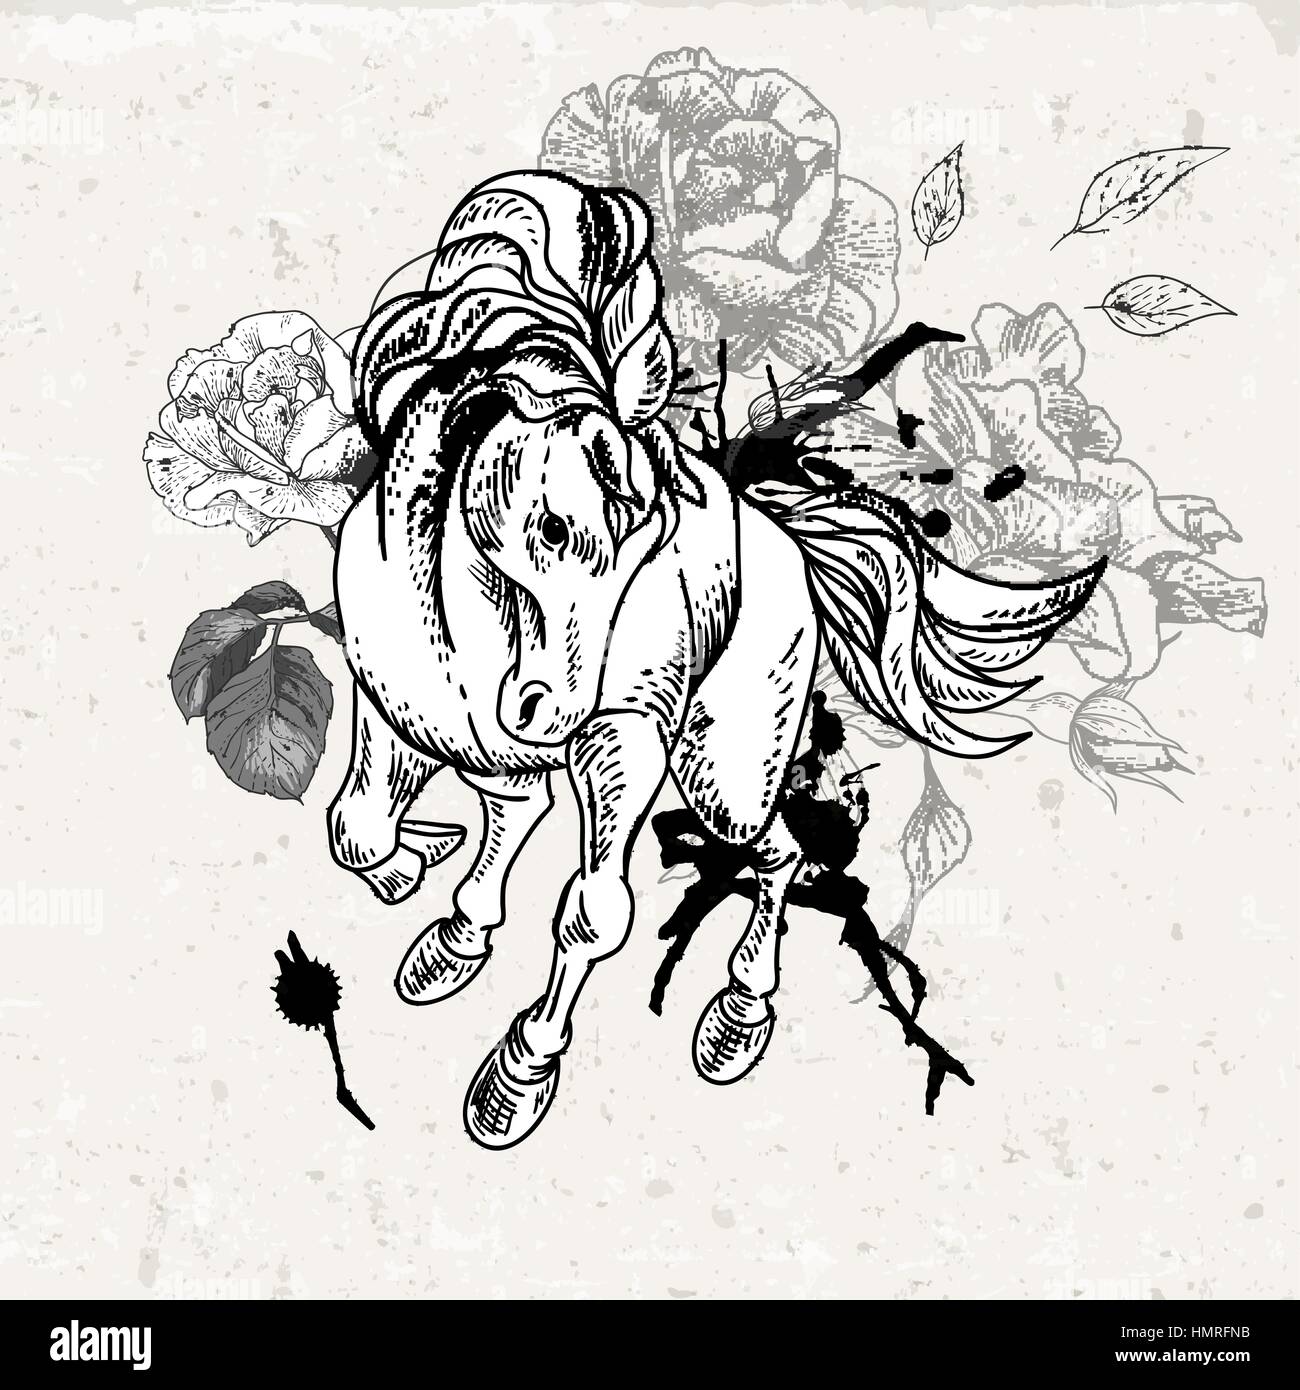 Disegnata A Mano In Bianco E Nero Disegno Di Cavallo Con